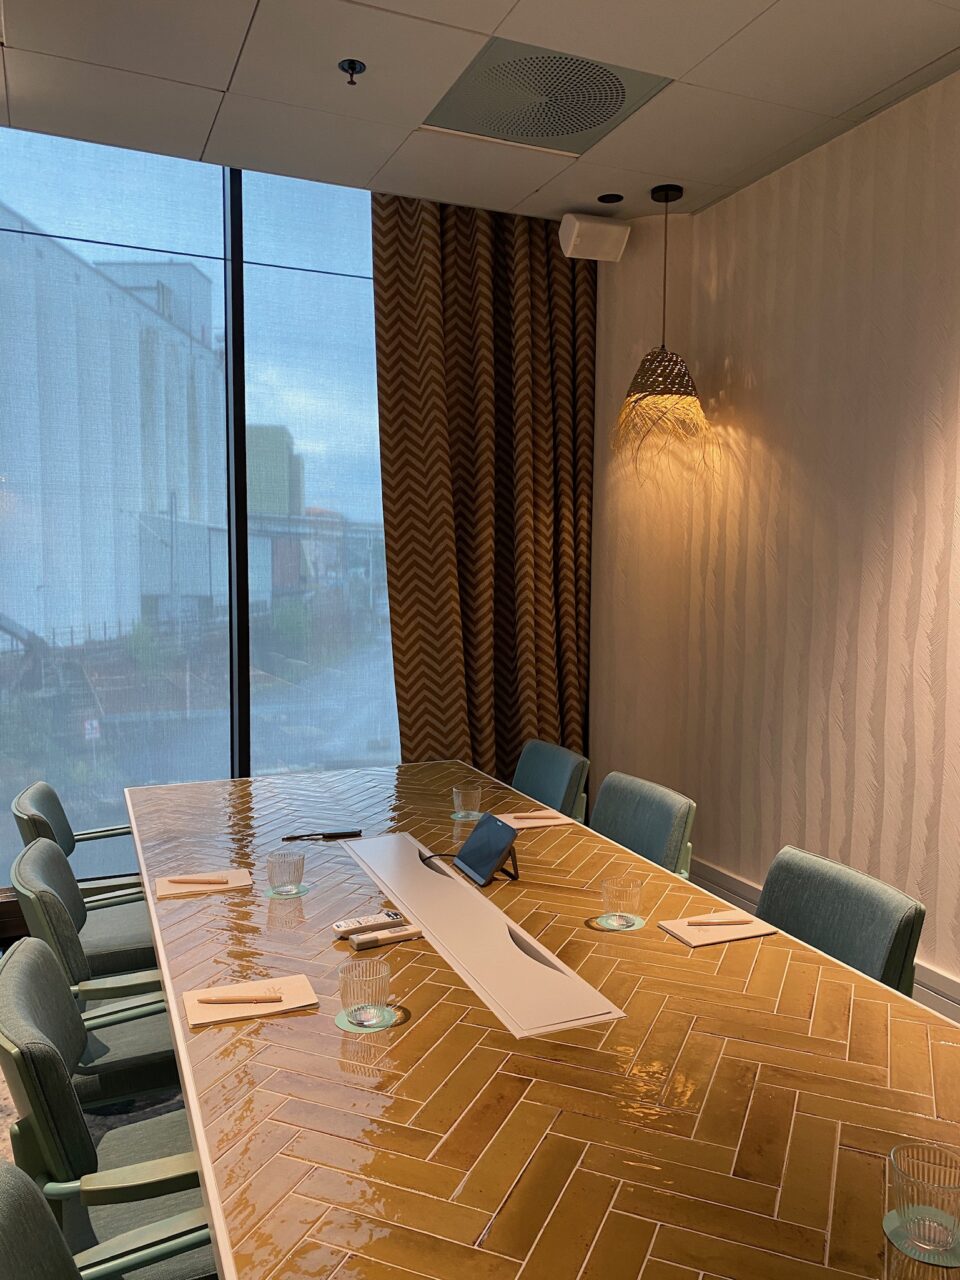 Møterom med langt bord og stoler, store vinduer og lekkert interiør. Foto